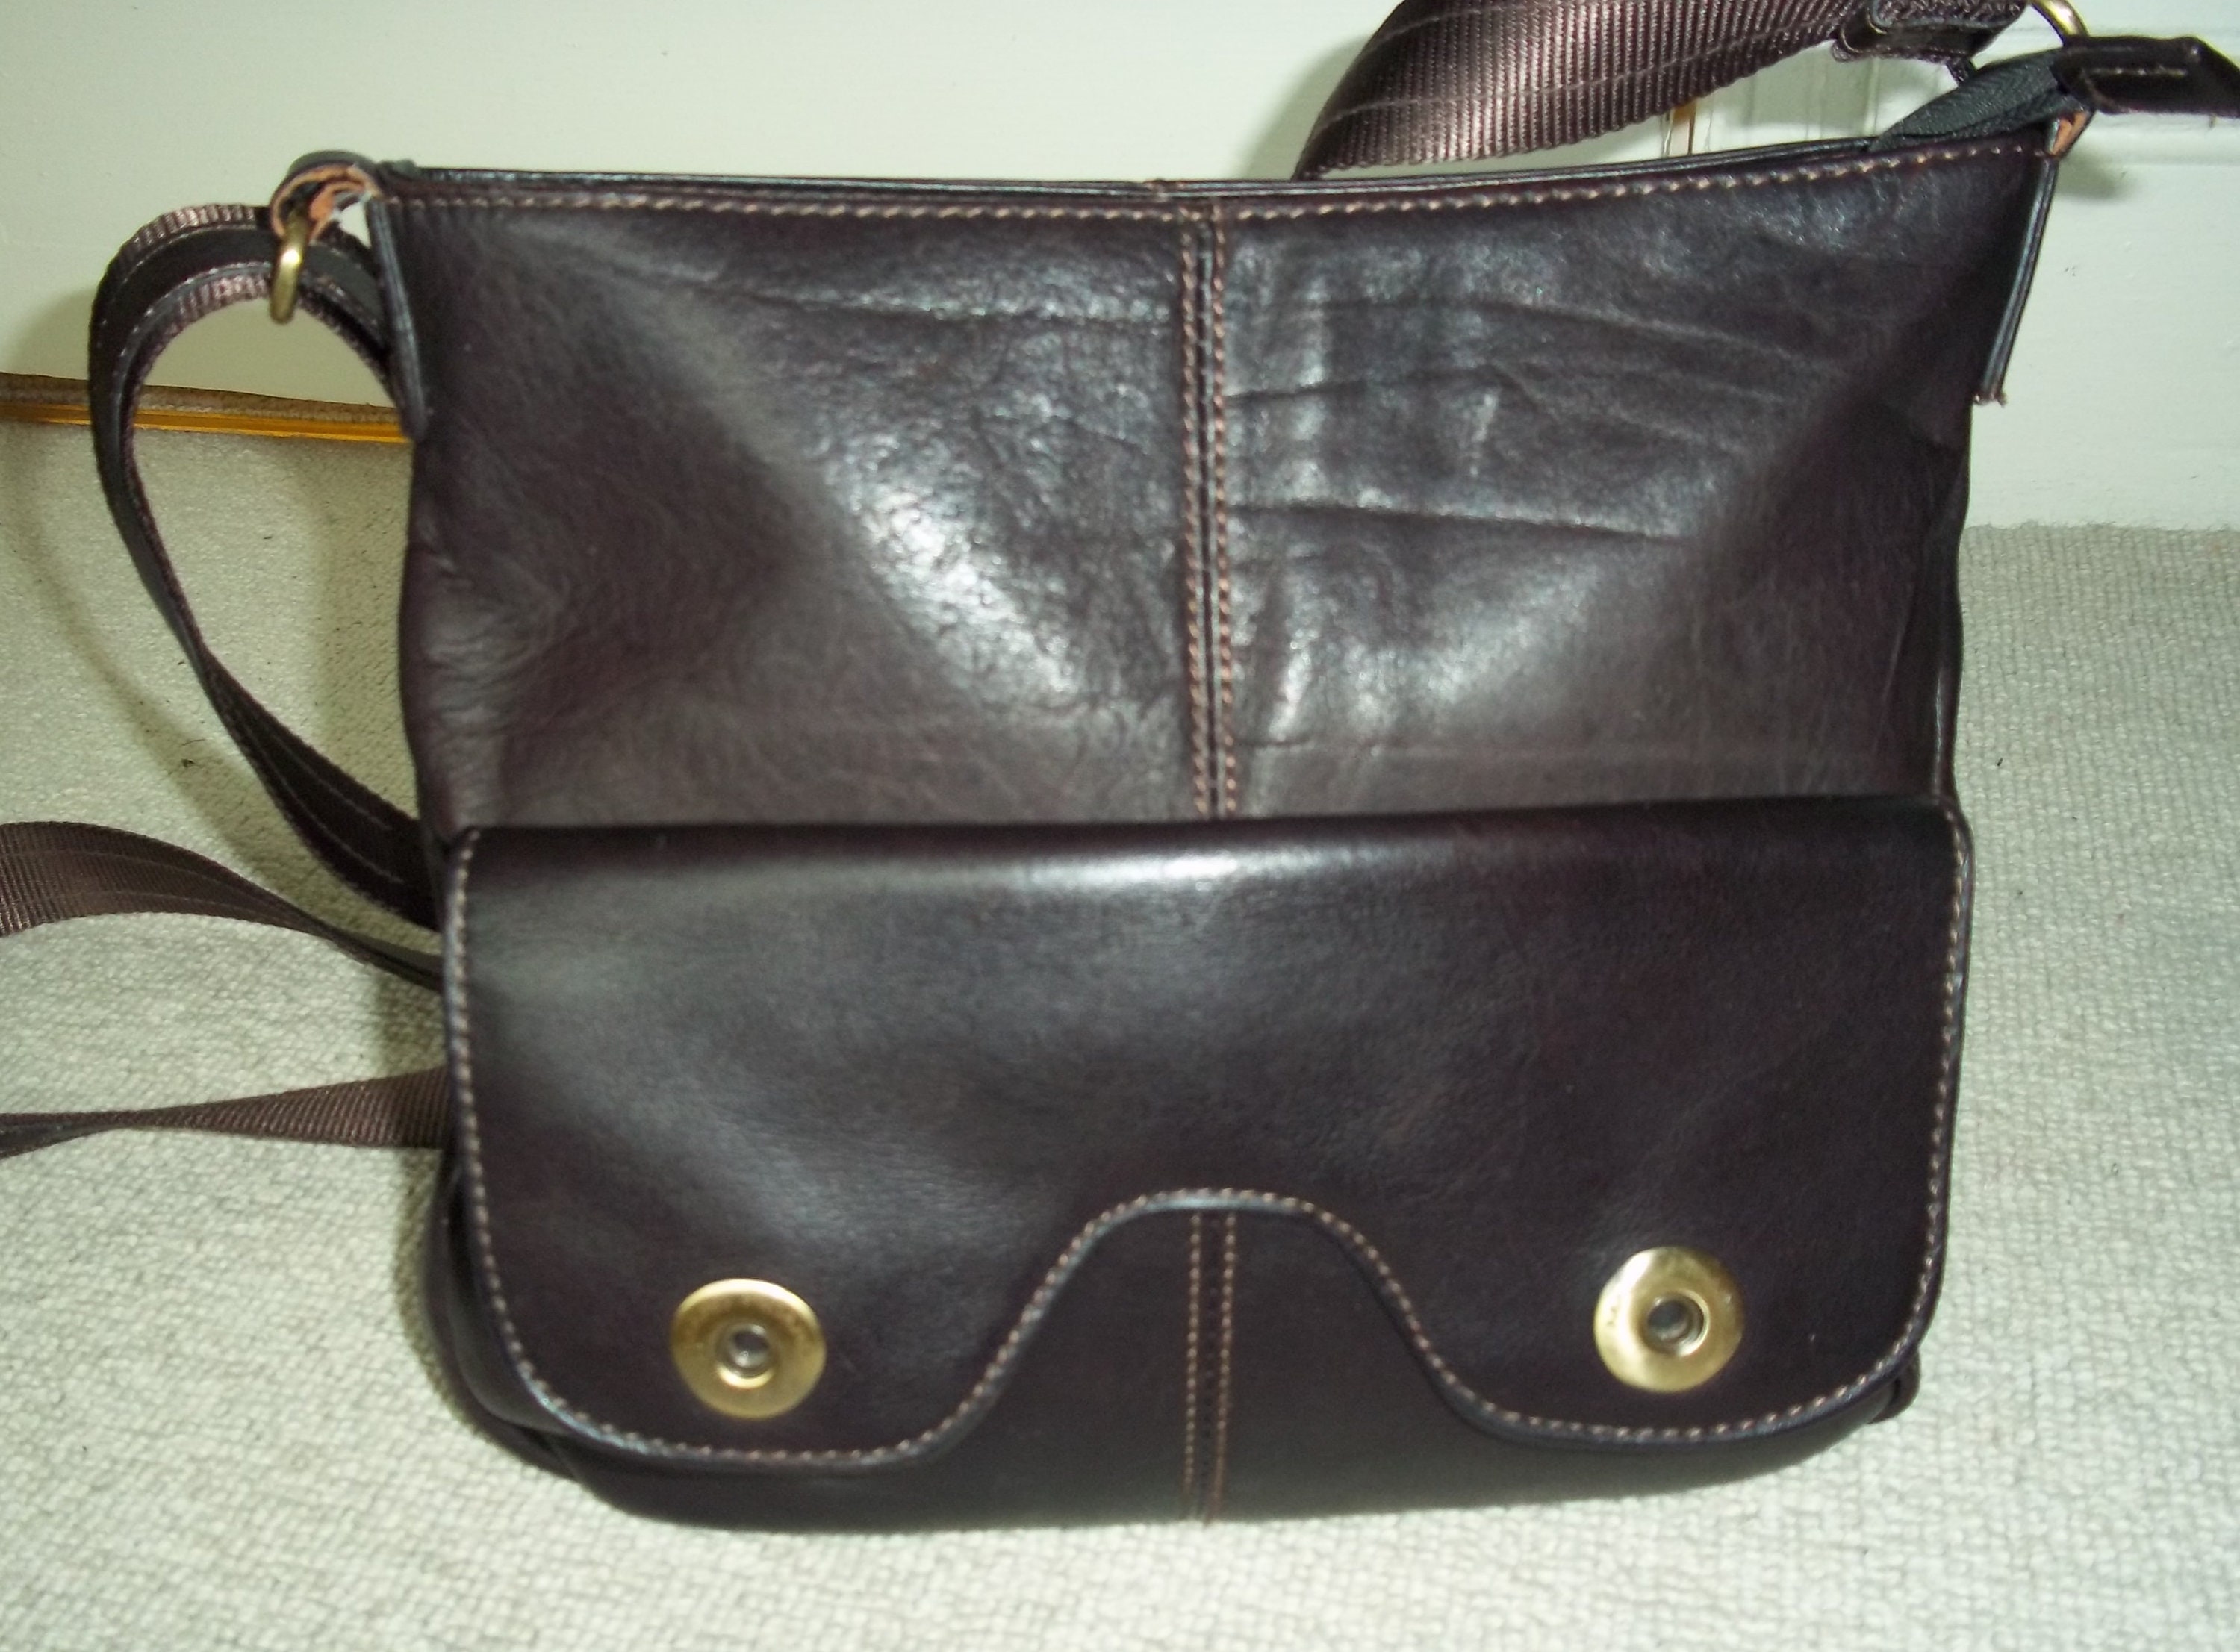 Picard Genuine Leather Shoulder Bag, Vintage Leather Shoulder Bag, Distressed Vintage Authentic Picard Top Handles Bag, Picard Zipper Bag